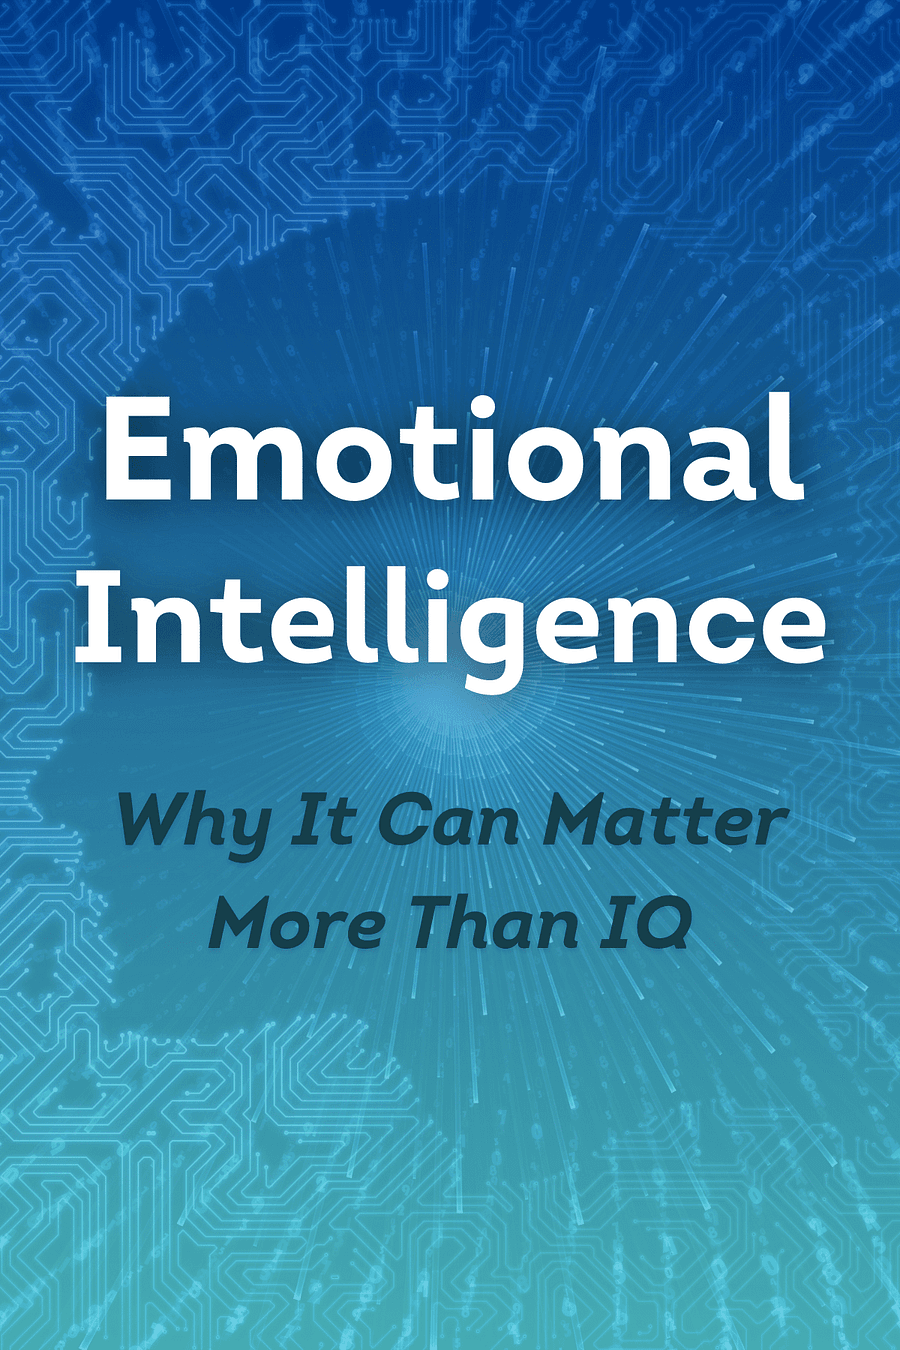 Emotional Intelligence by Daniel Goleman - Book Summary